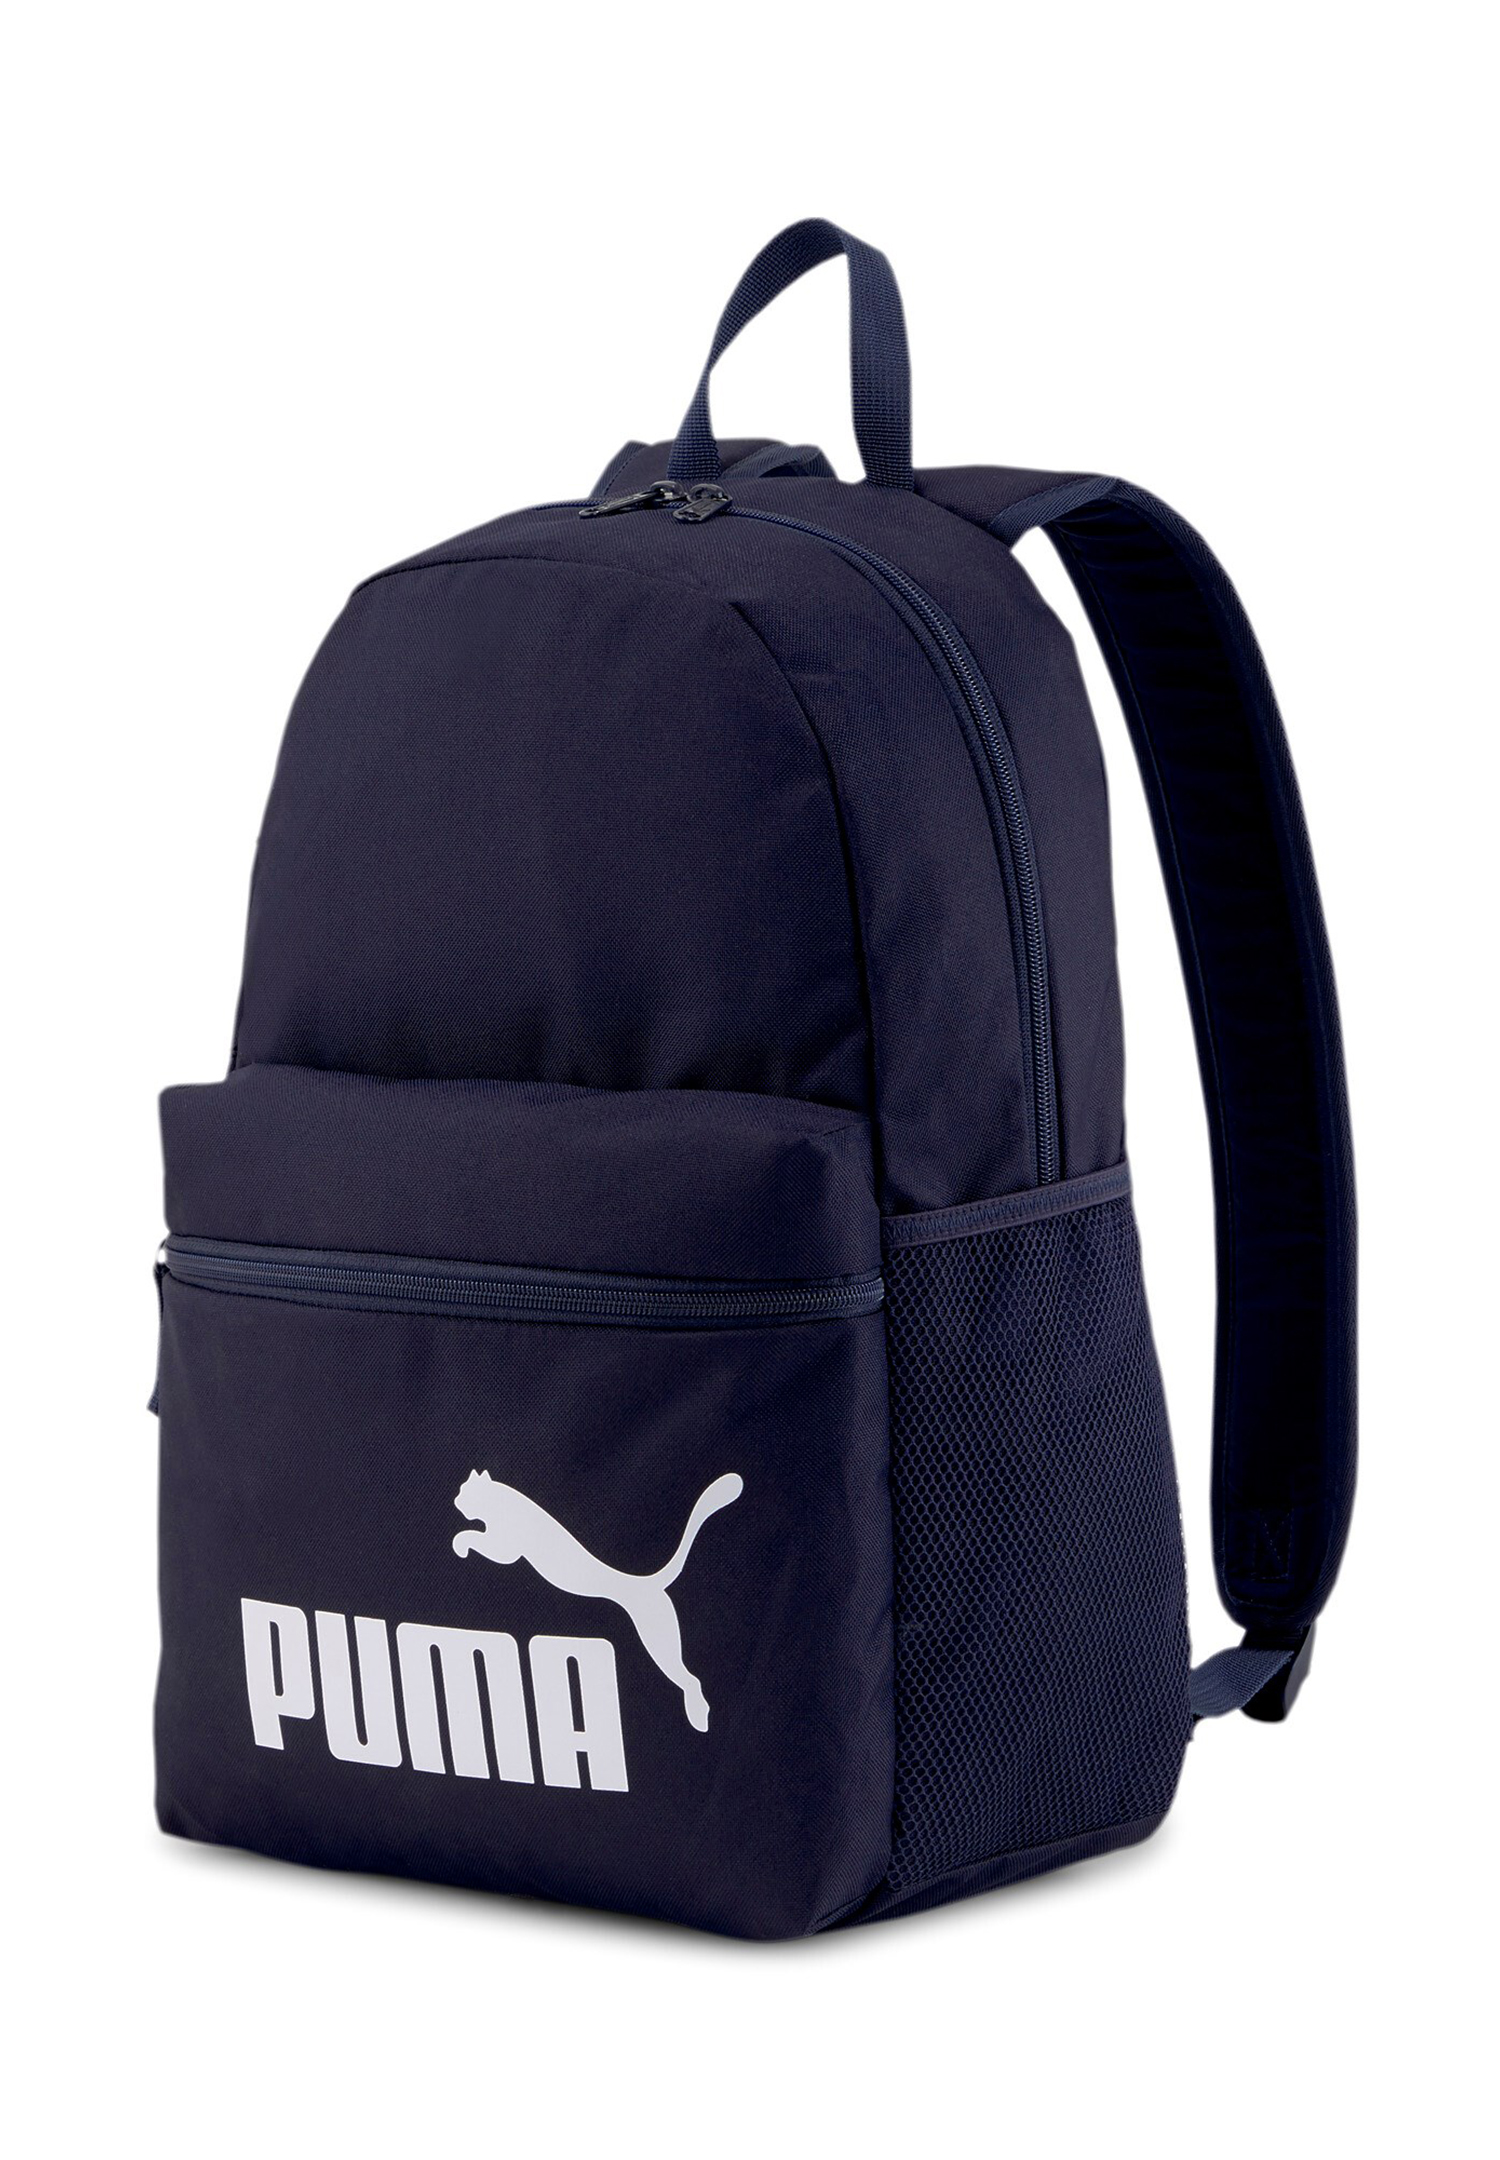 PUMA Phase Backpack Rucksack Sport Freizeit Reise Schule 075487 43 navy